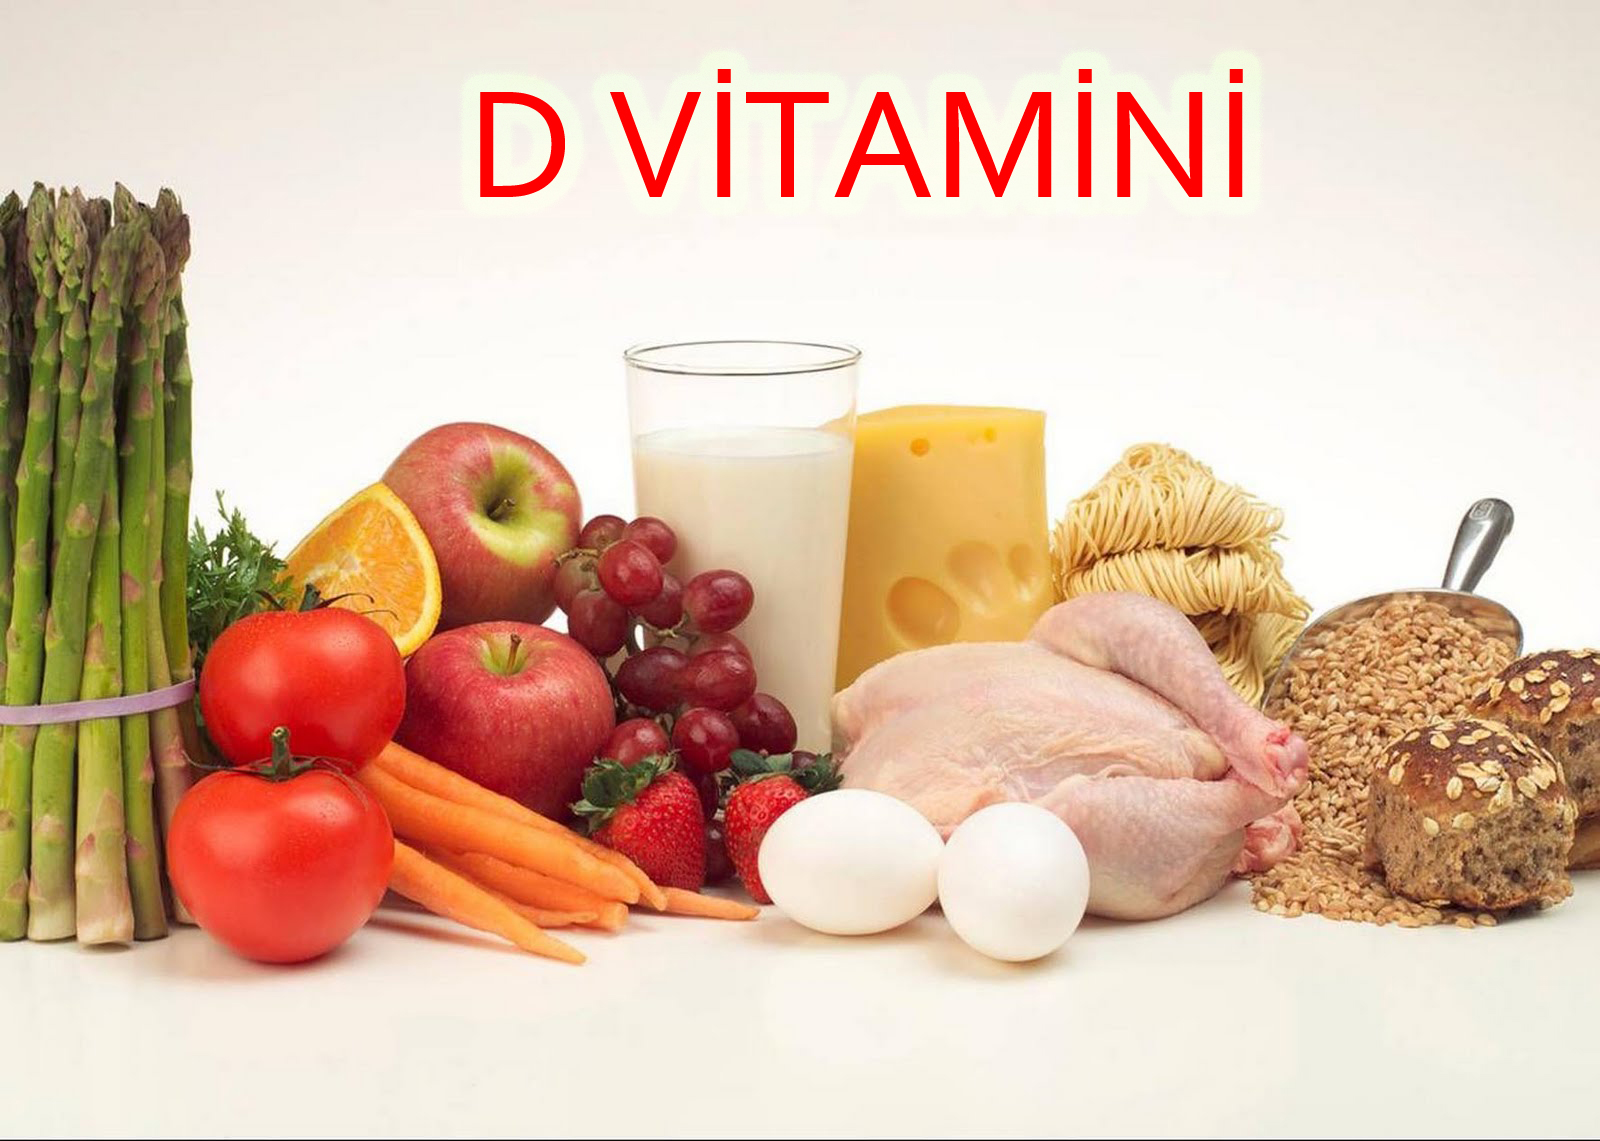 D vitamini eksikliği bu hastalığıa sebep oluyor